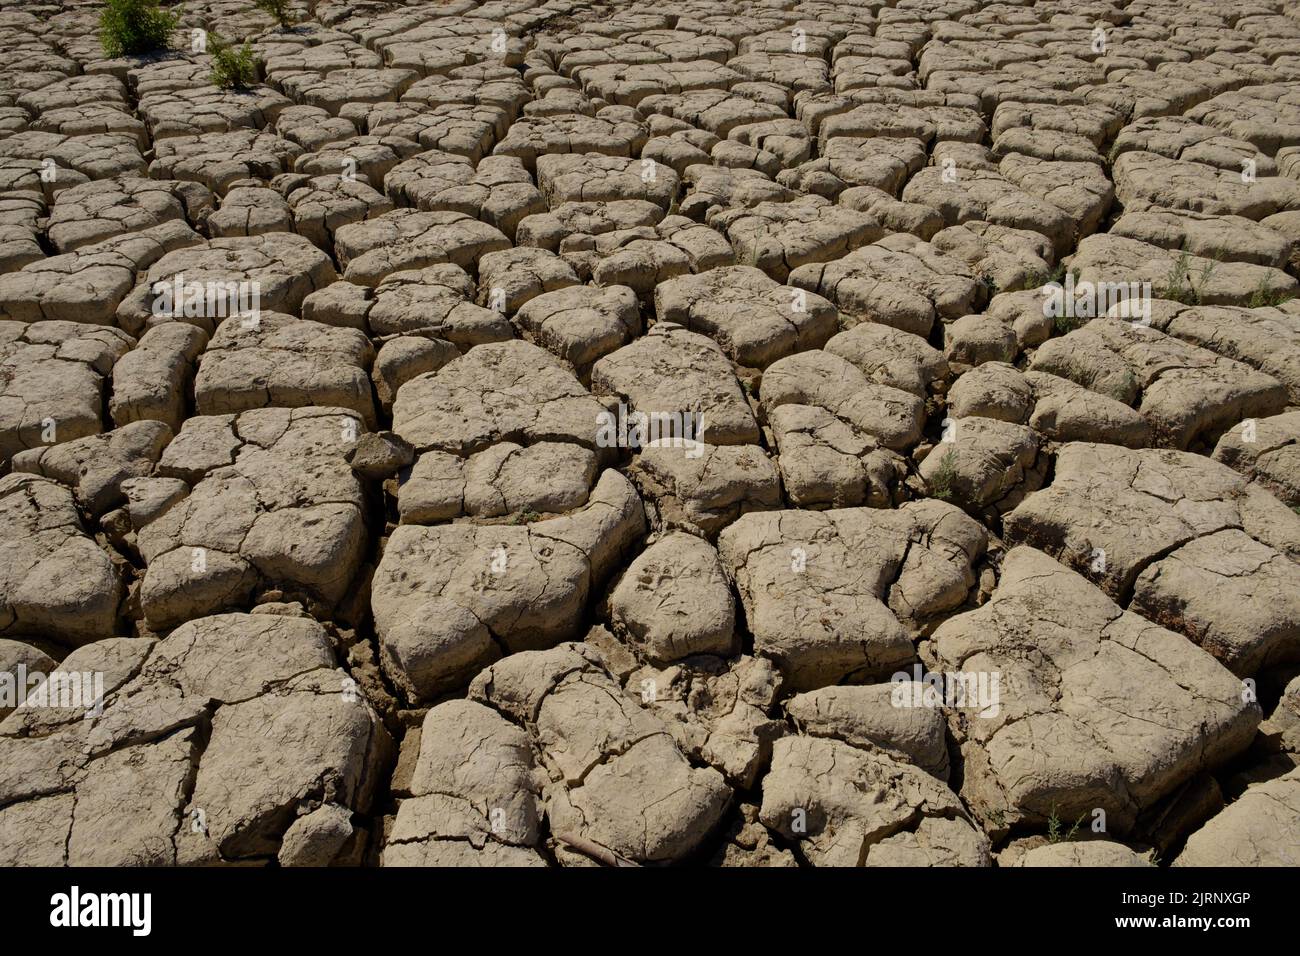 Trockenheit und sehr niedriger Wasserstand im Vinuela-Stausee in einer sehr trockenen Region von Axarquia, Malaga, Spanien Stockfoto